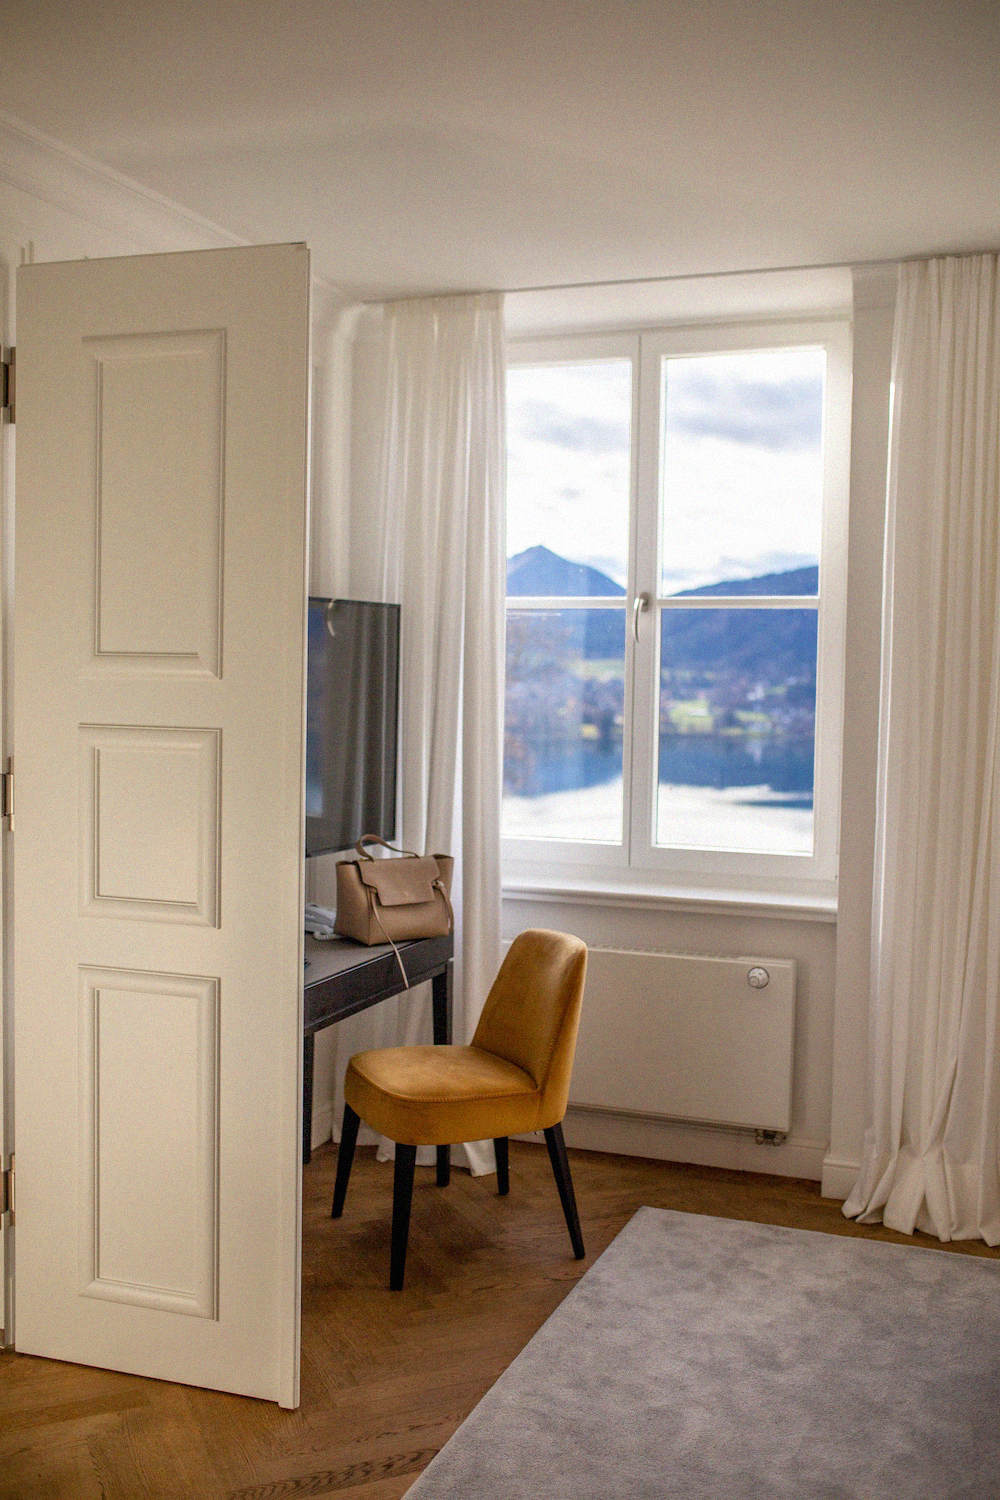 Das Tegernsee Hotel Luxushotel day spa Bayern